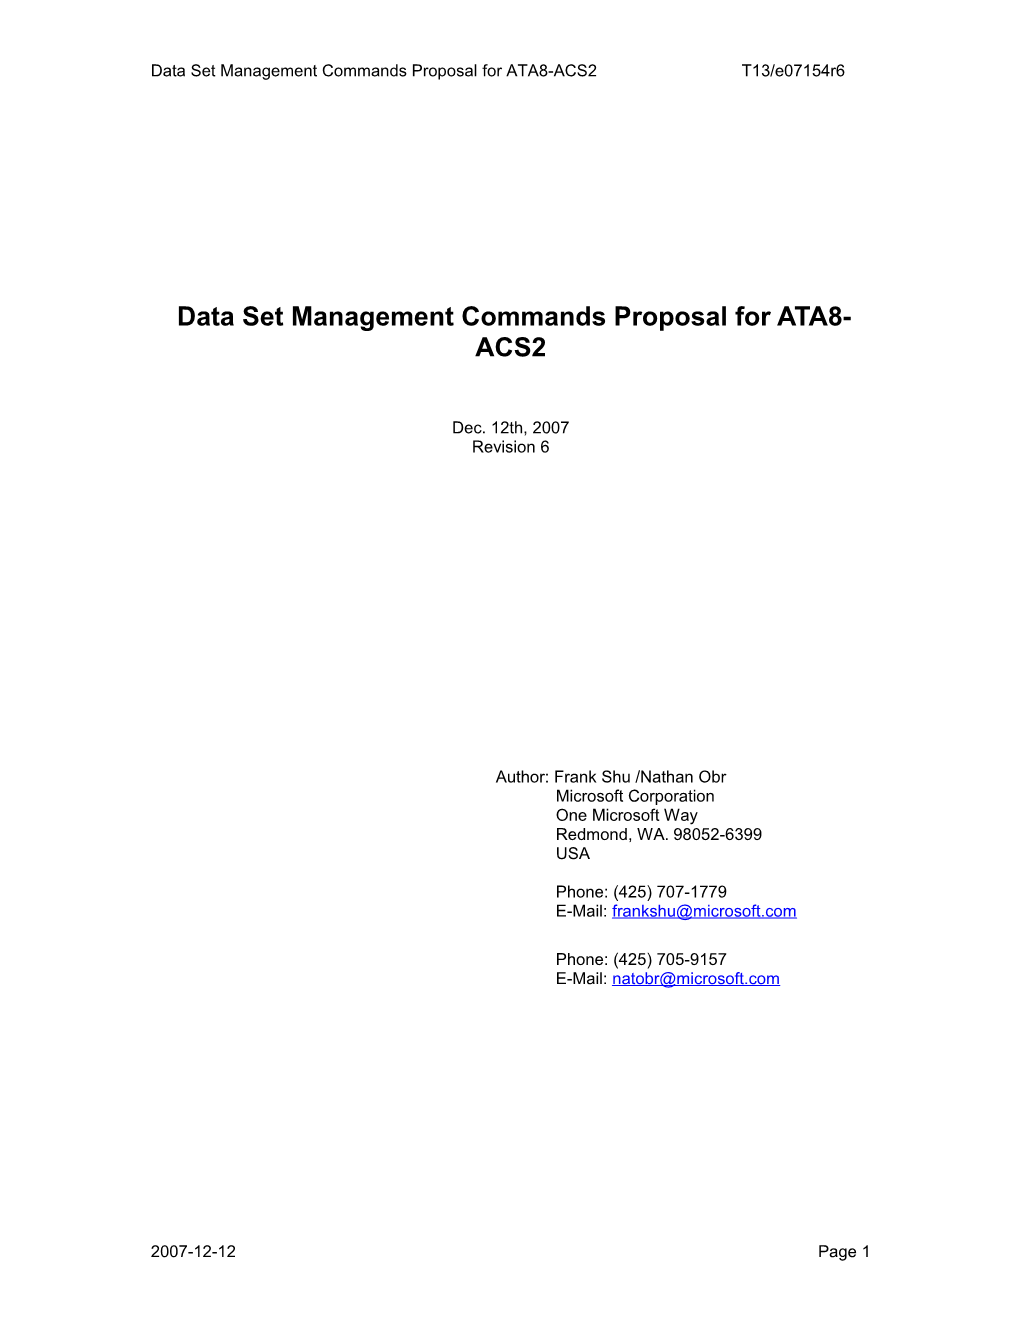 Non Volatile Cache Command Proposal for ATA8-ACS